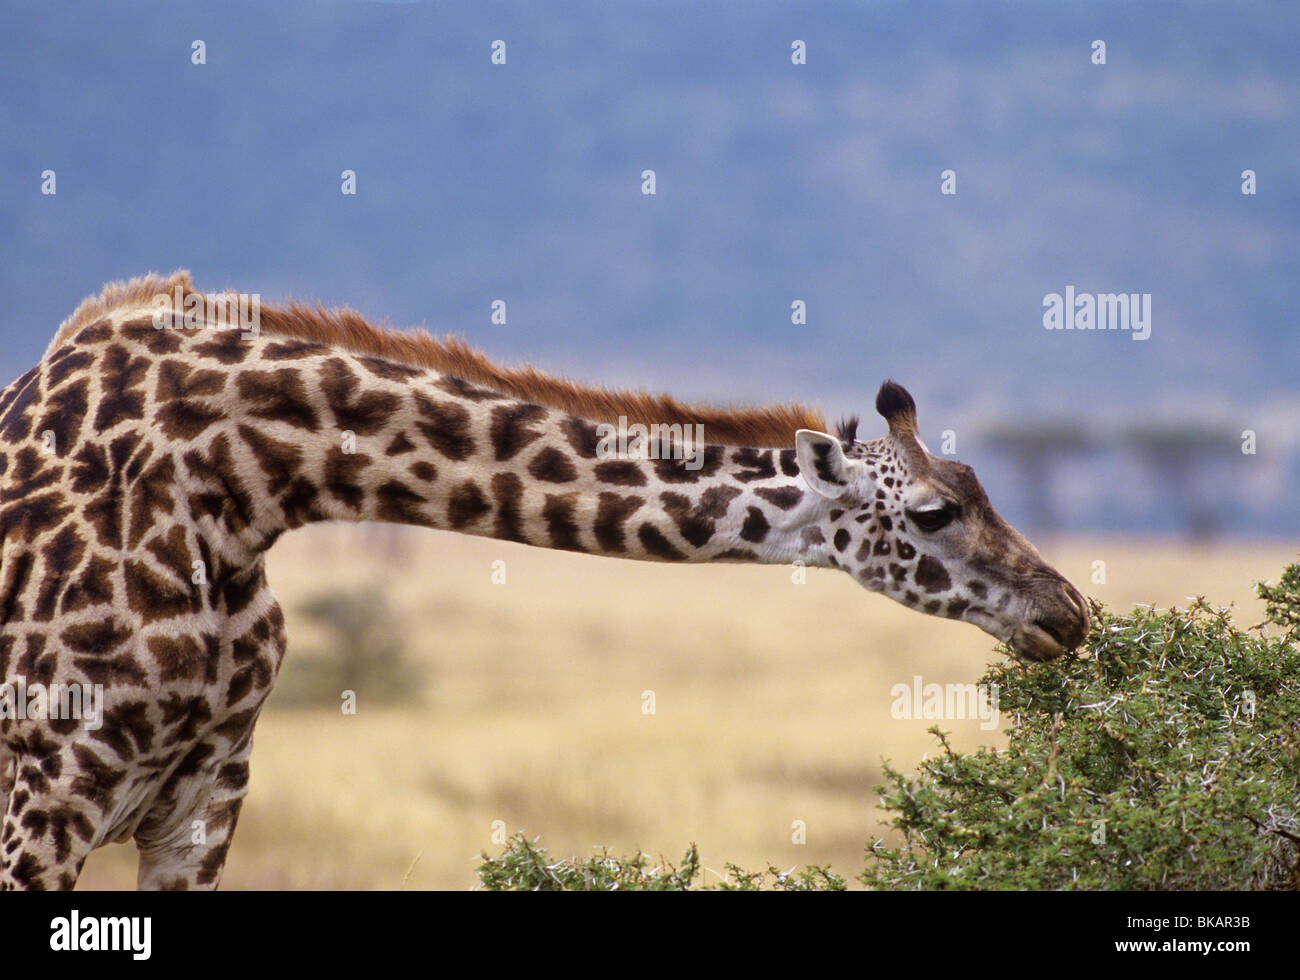 Giraffe, Giraffa camelopardalis, uses long neck to browse on a spiny acacia bush Stock Photo